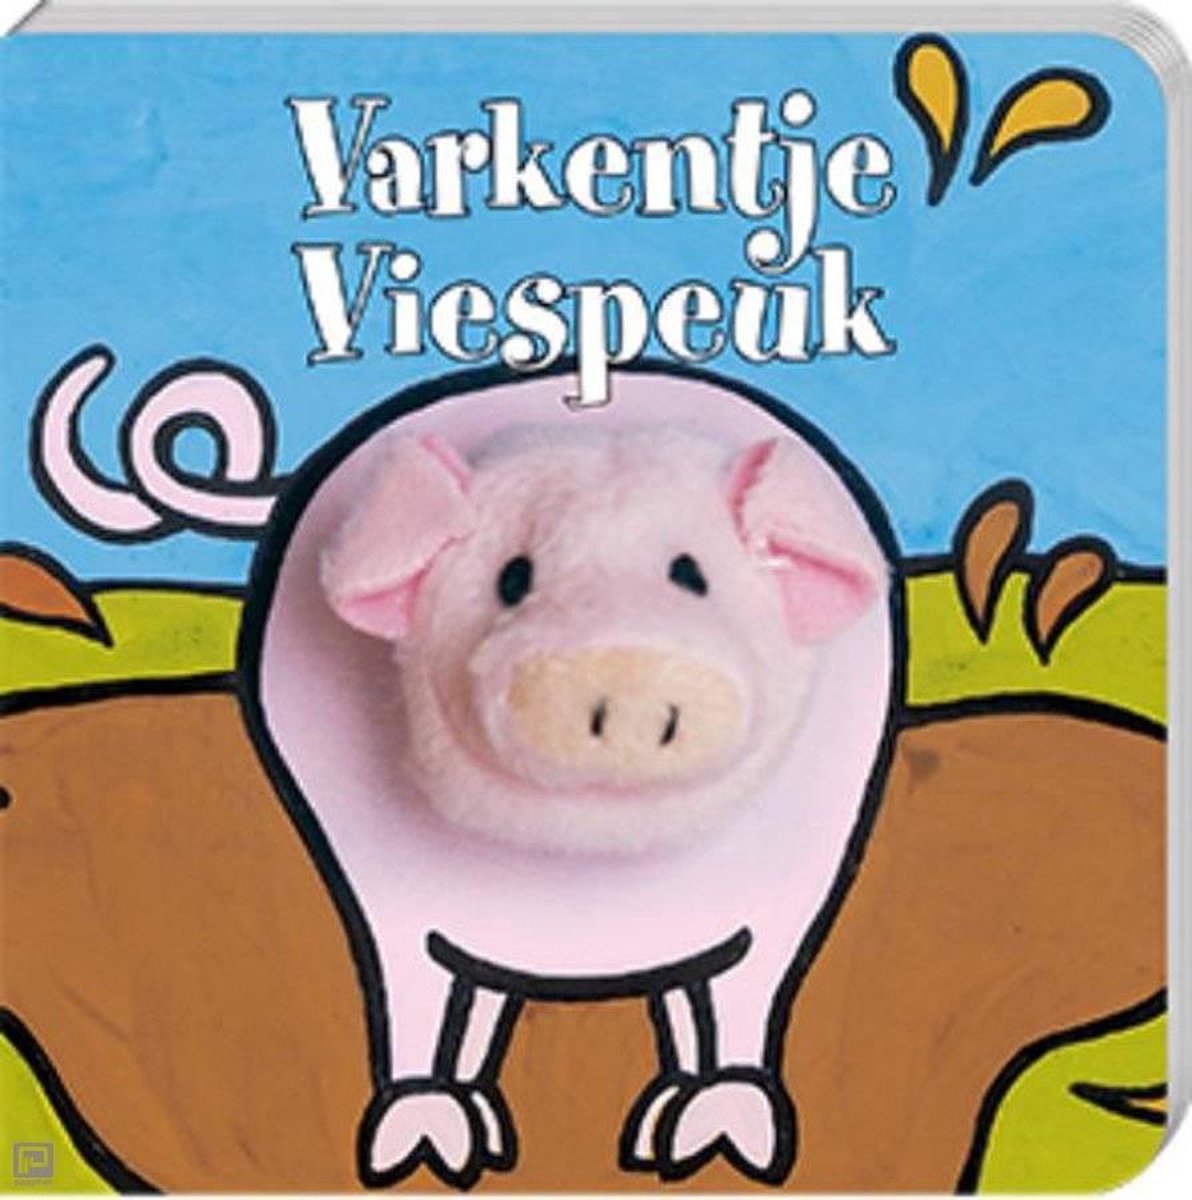 Vingerpopboekjes - Varkentje viespeuk, Klaartje van der Put | 9789059644205  | Boeken | bol.com